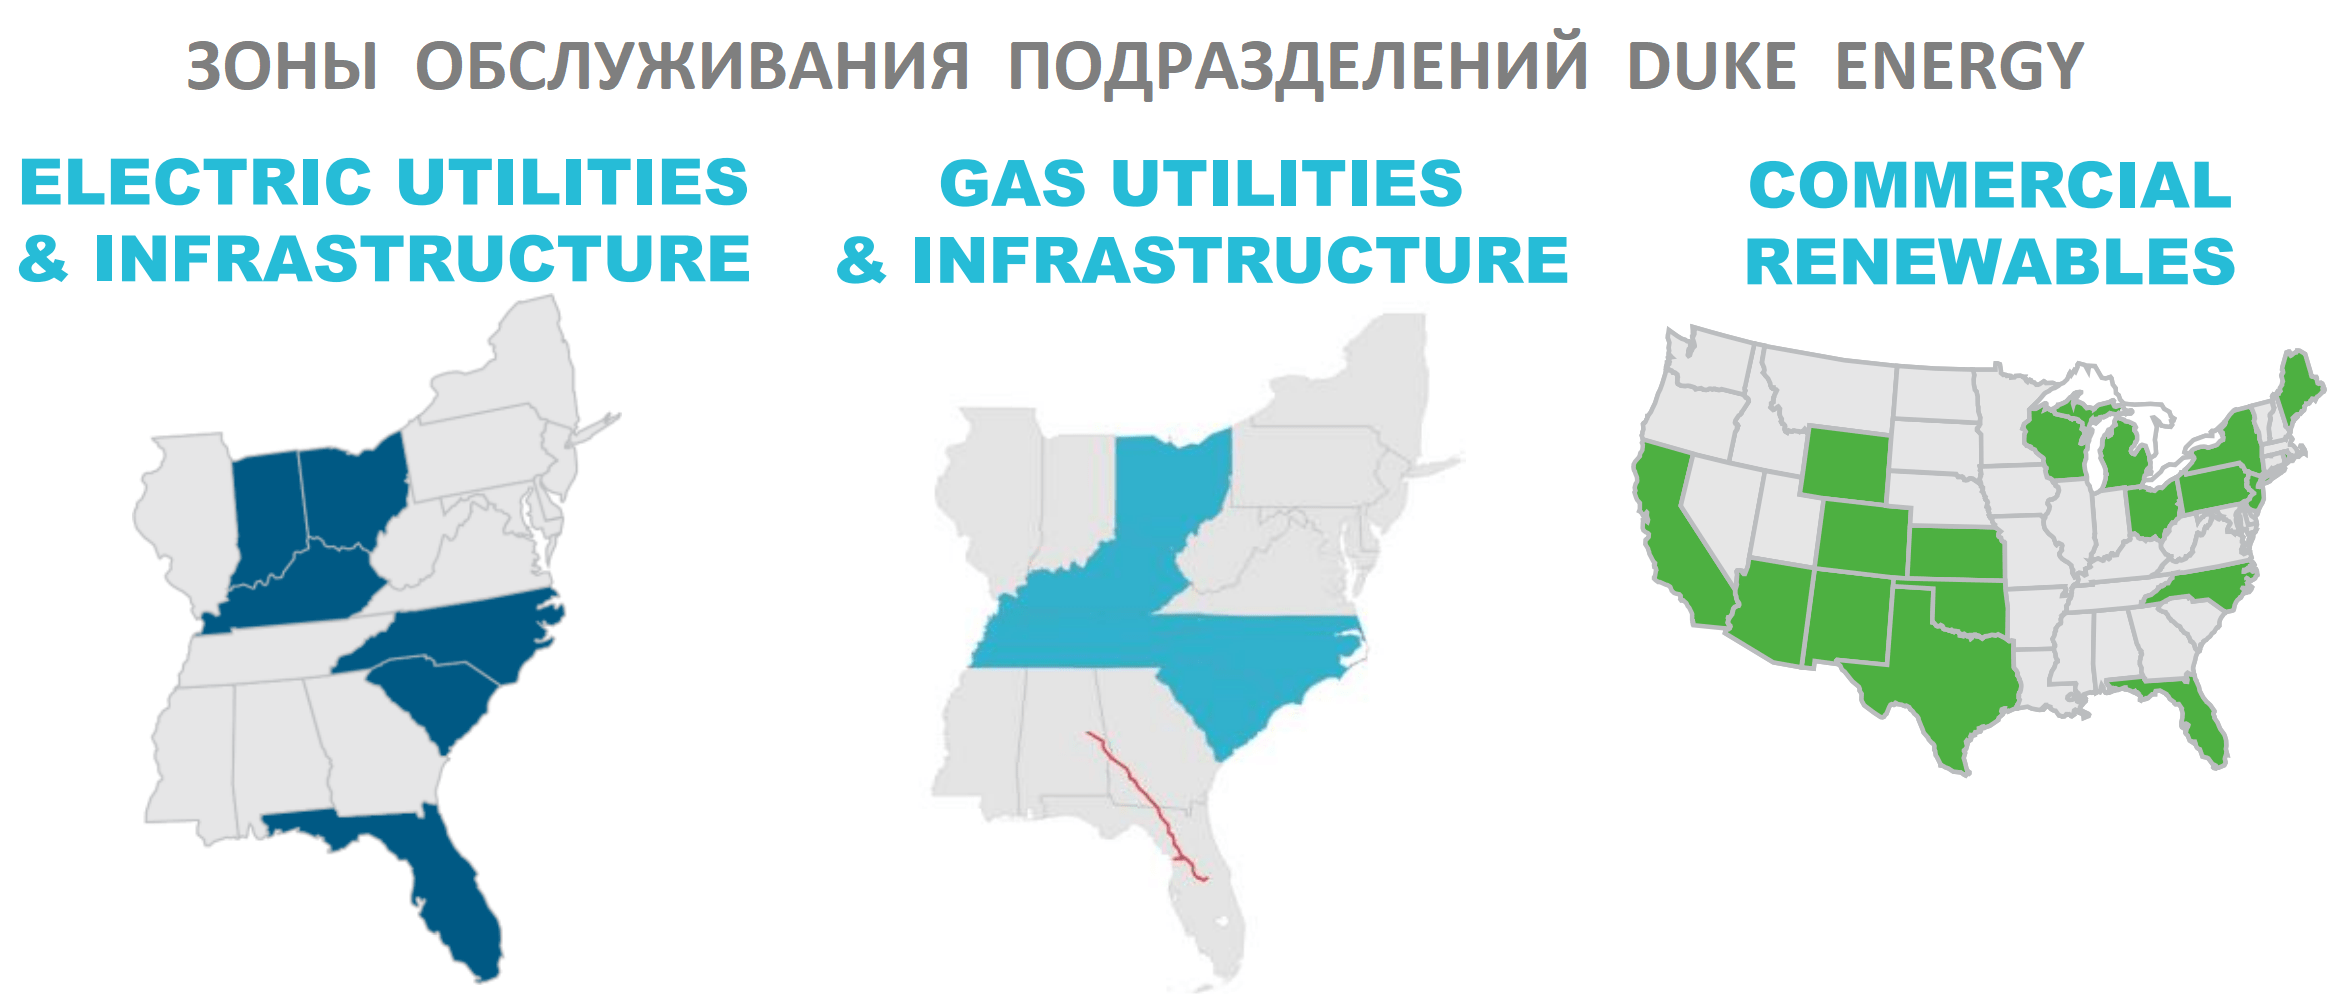 Зоны обслуживания подразделений Duke Energy